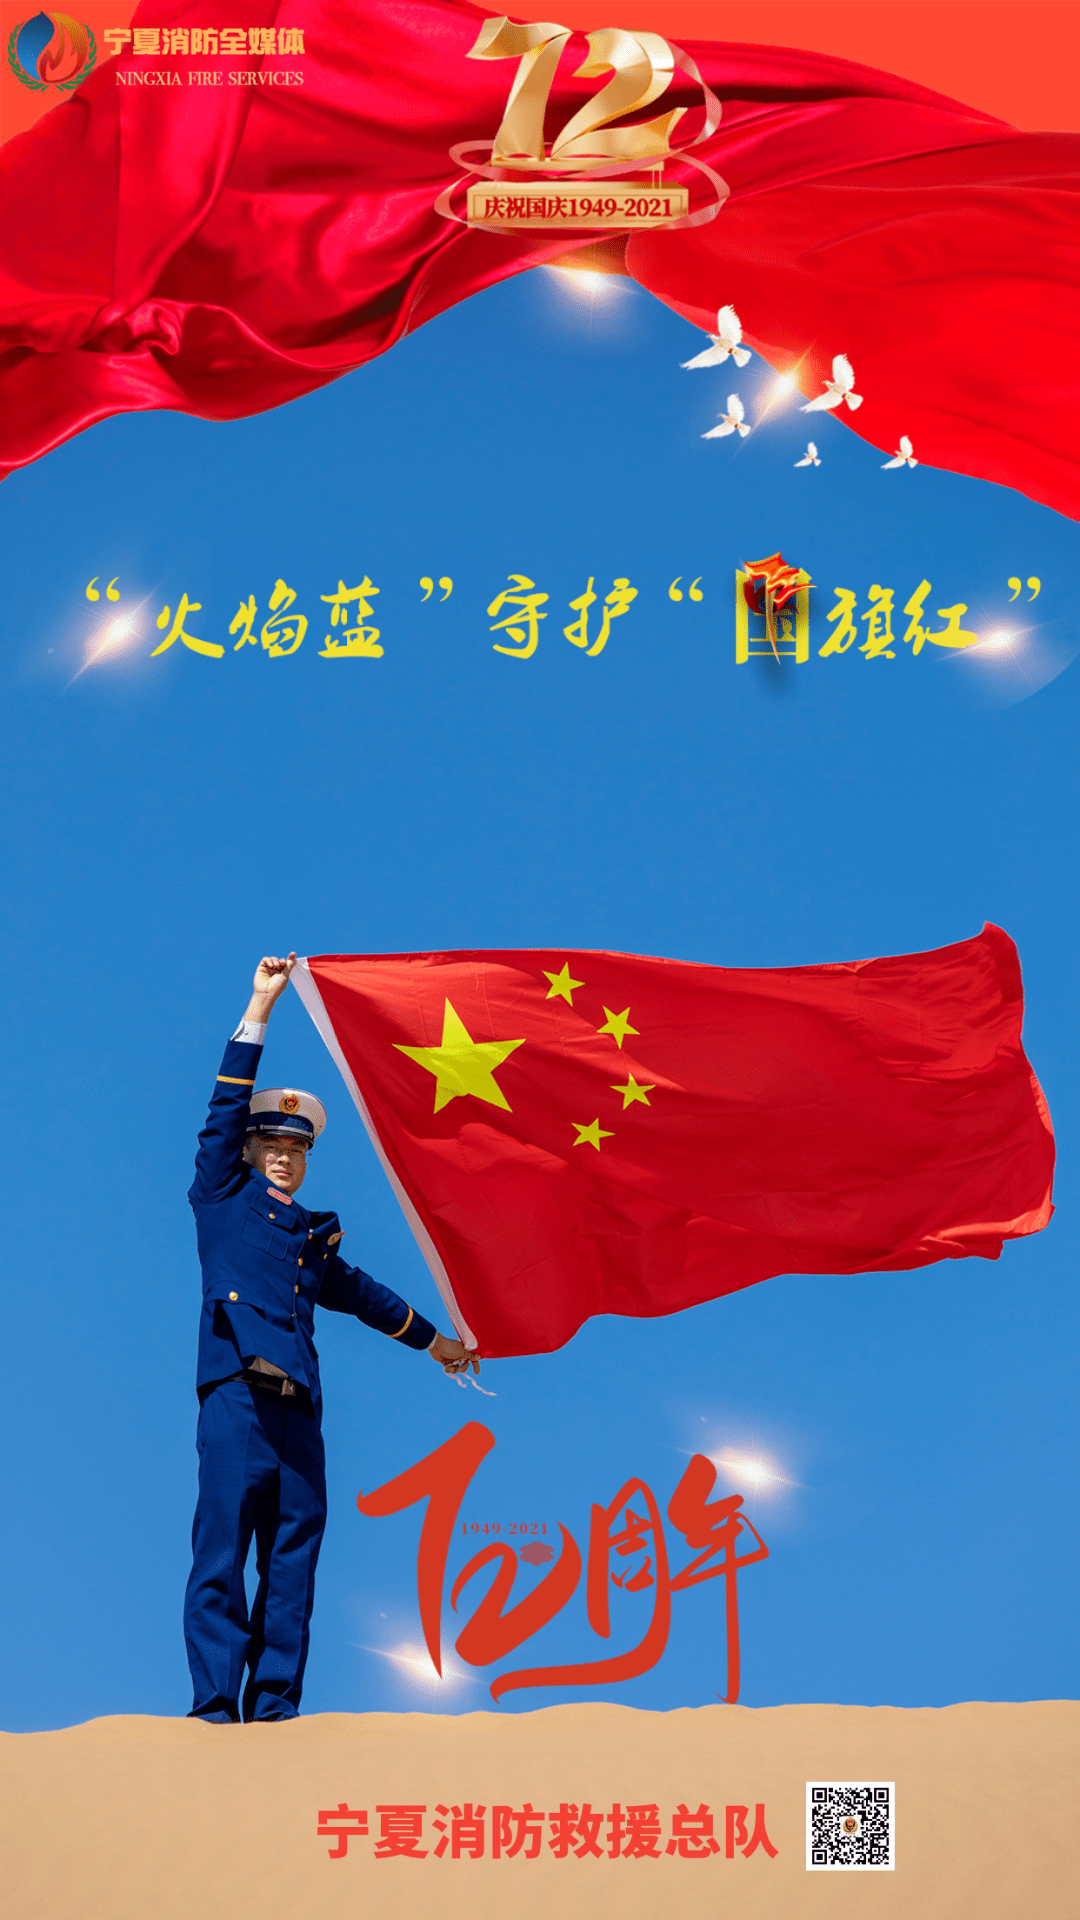 中国消防救援队旗原图图片